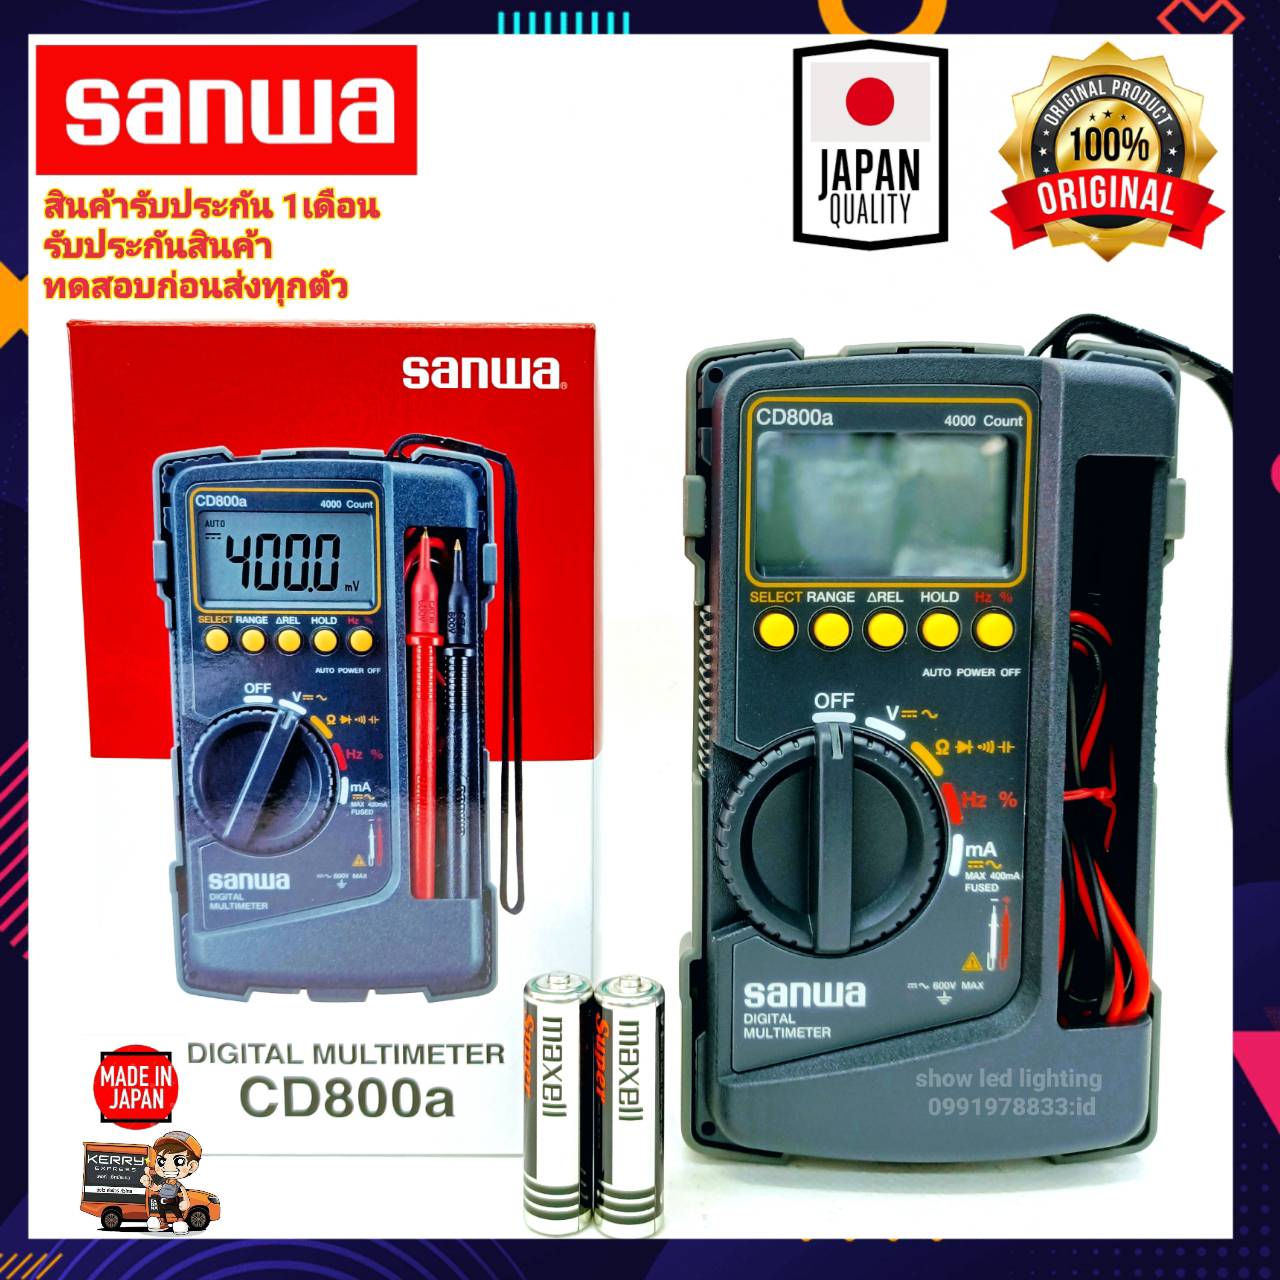 มัลติมิเตอร์ดิจิตอล Sanwa CD800a แท้ 100% Digital Multimeter มิเตอร์วัดไฟ ดิจิตอลมัลติมิเตอร์  มิเตอร์วัดกระแสไฟ Sanwa cd800a